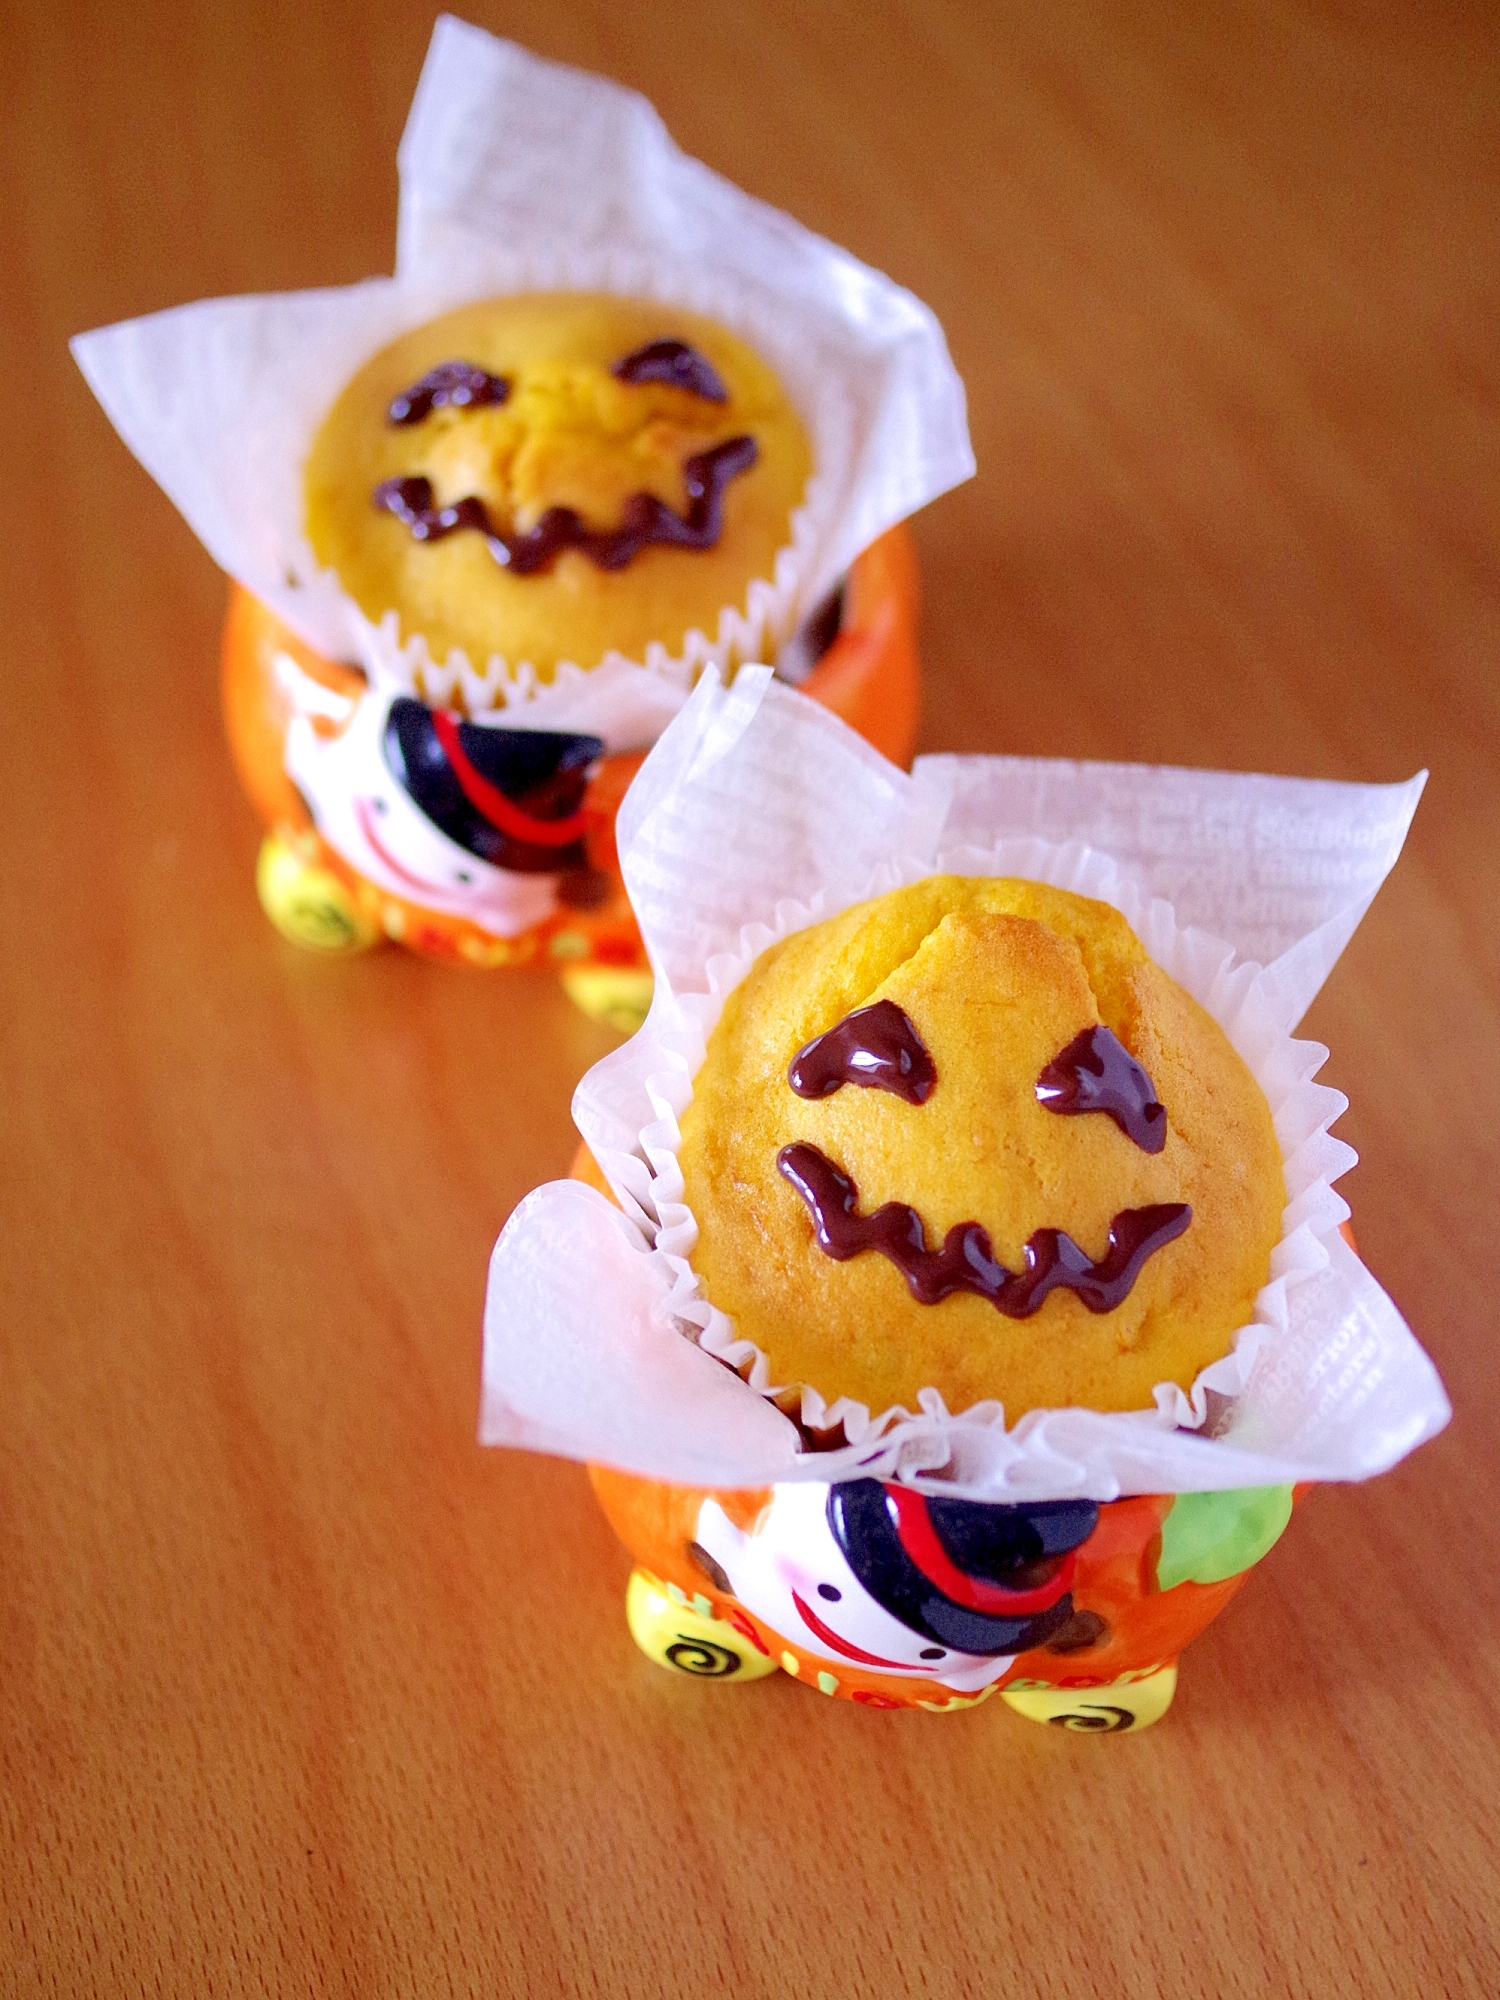 かぼちゃの豆乳カップケーキ☆HMで簡単ハロウィン